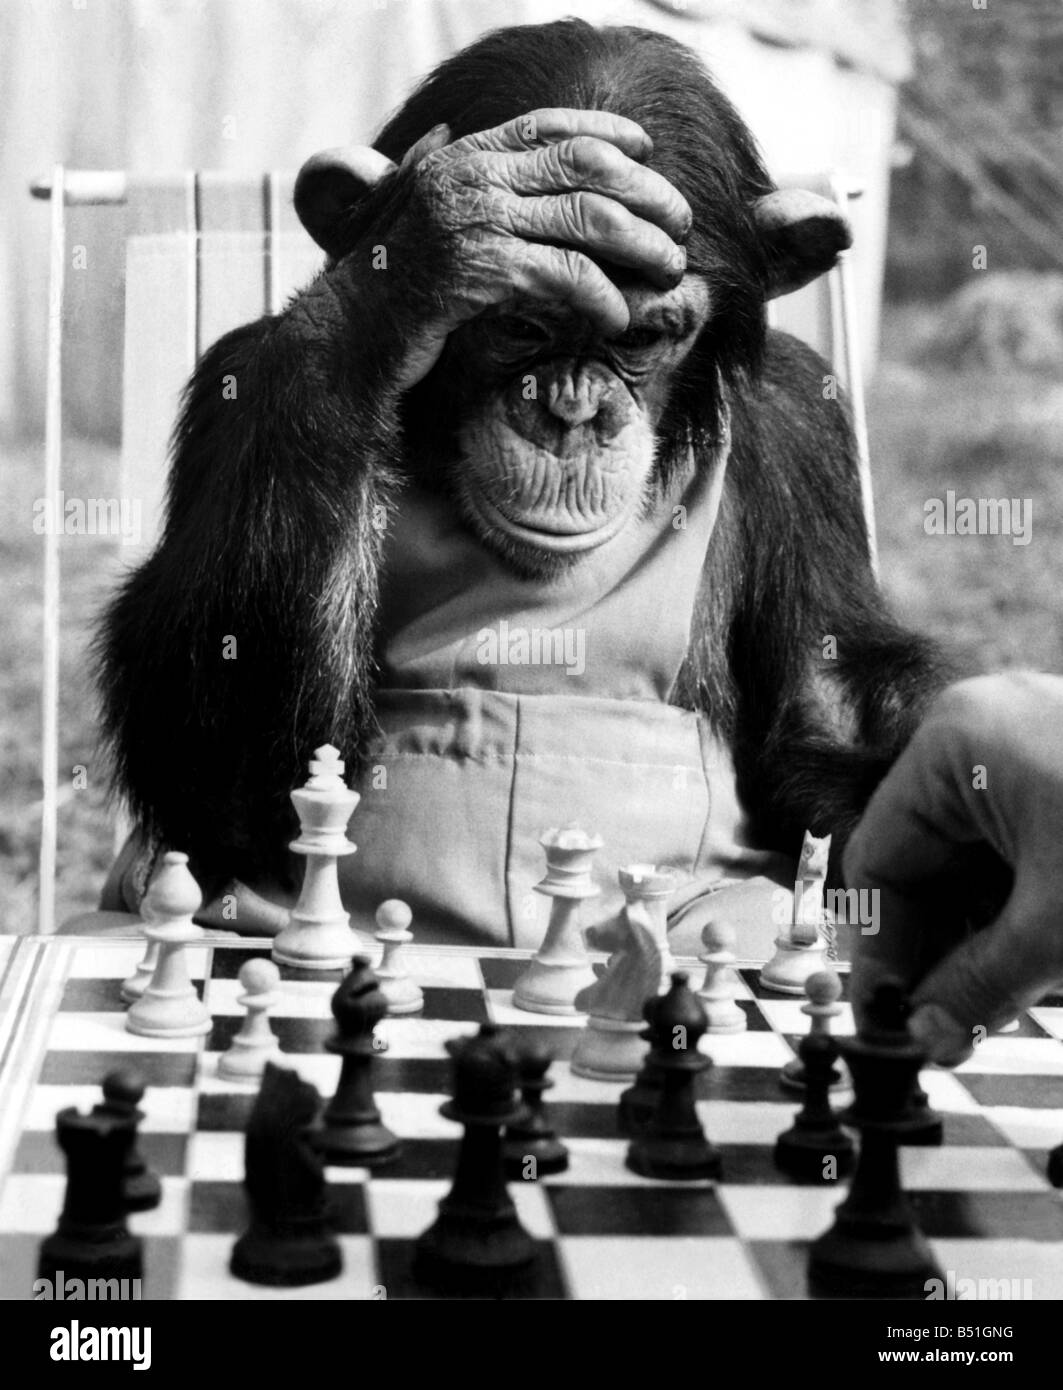 El campeón de chimpancés. Pepe, el campeón de ajedrez de Ciudad del chimpancé, obtiene en algunos graves prácticas de año de los grandes partidos. El 19 de junio Fotografía